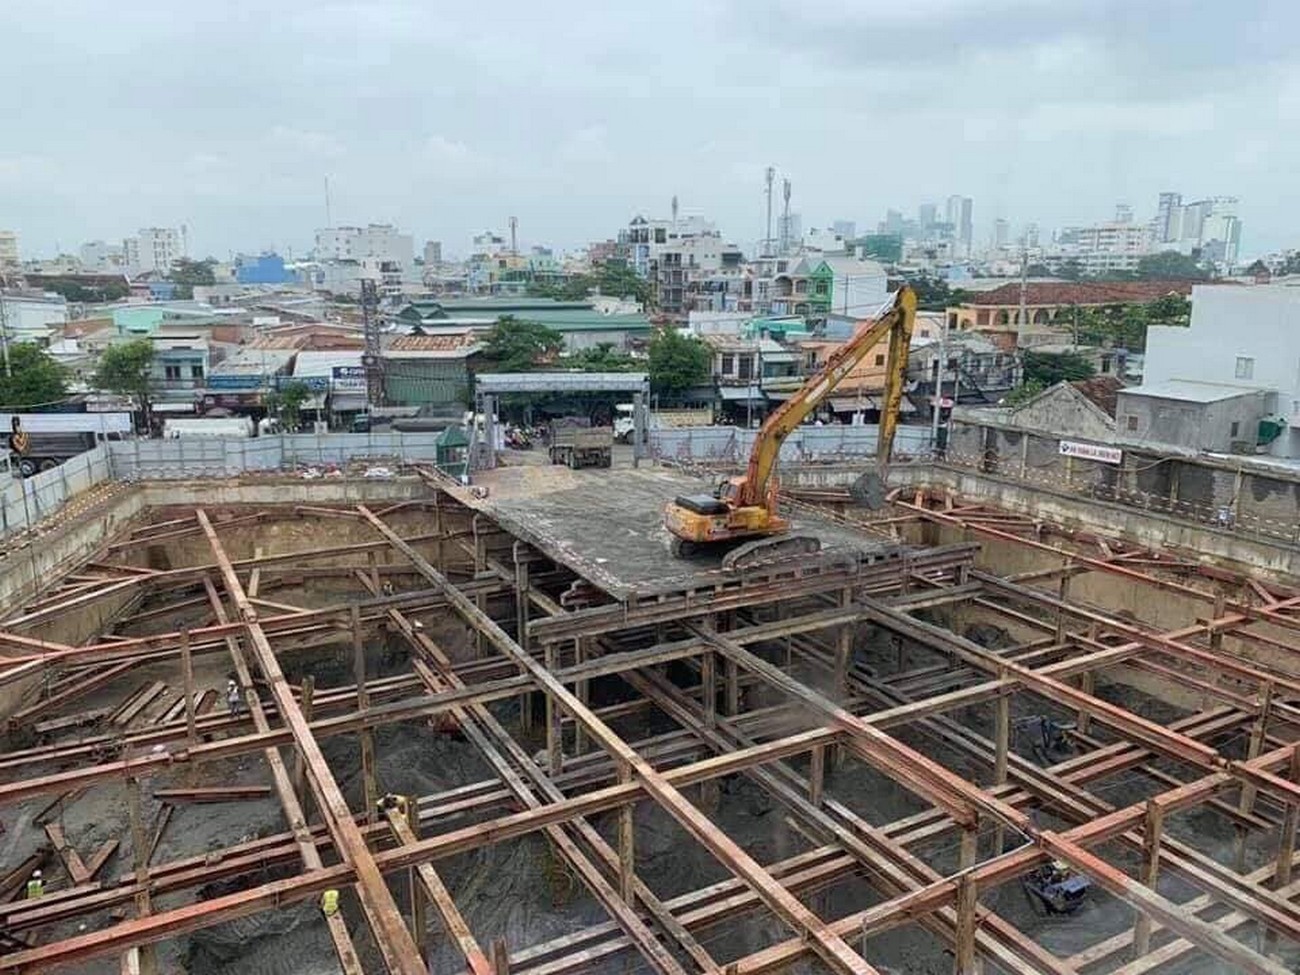 Tiến độ xây dựng tháng 09/2020 Imperium Town Nha Trang